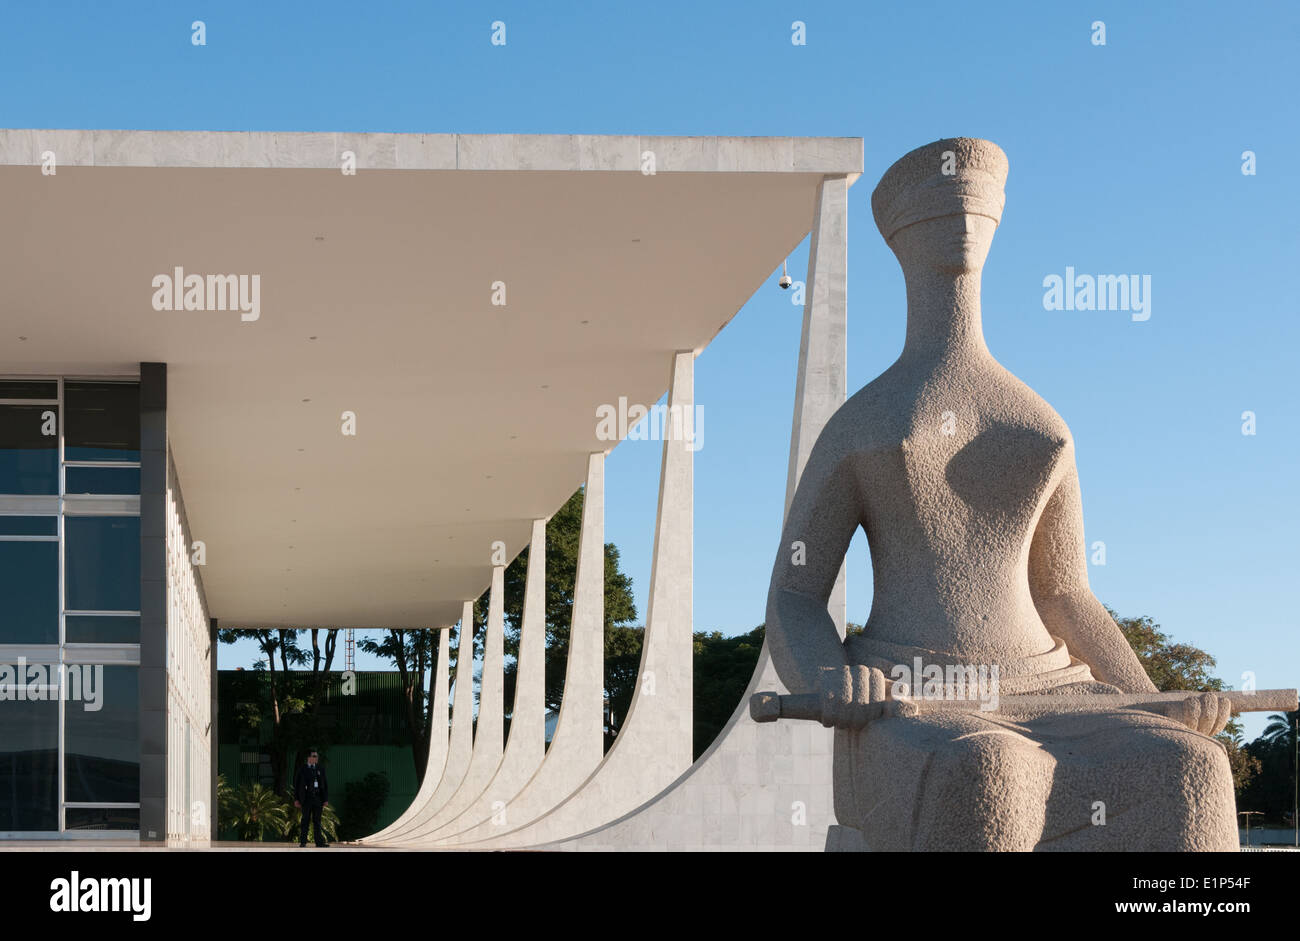 La Cour fédérale suprême et la sculpture « la Justice » d'Alfredo Ceschiatti sur la place des trois puissances Brasilia, Brésil Banque D'Images